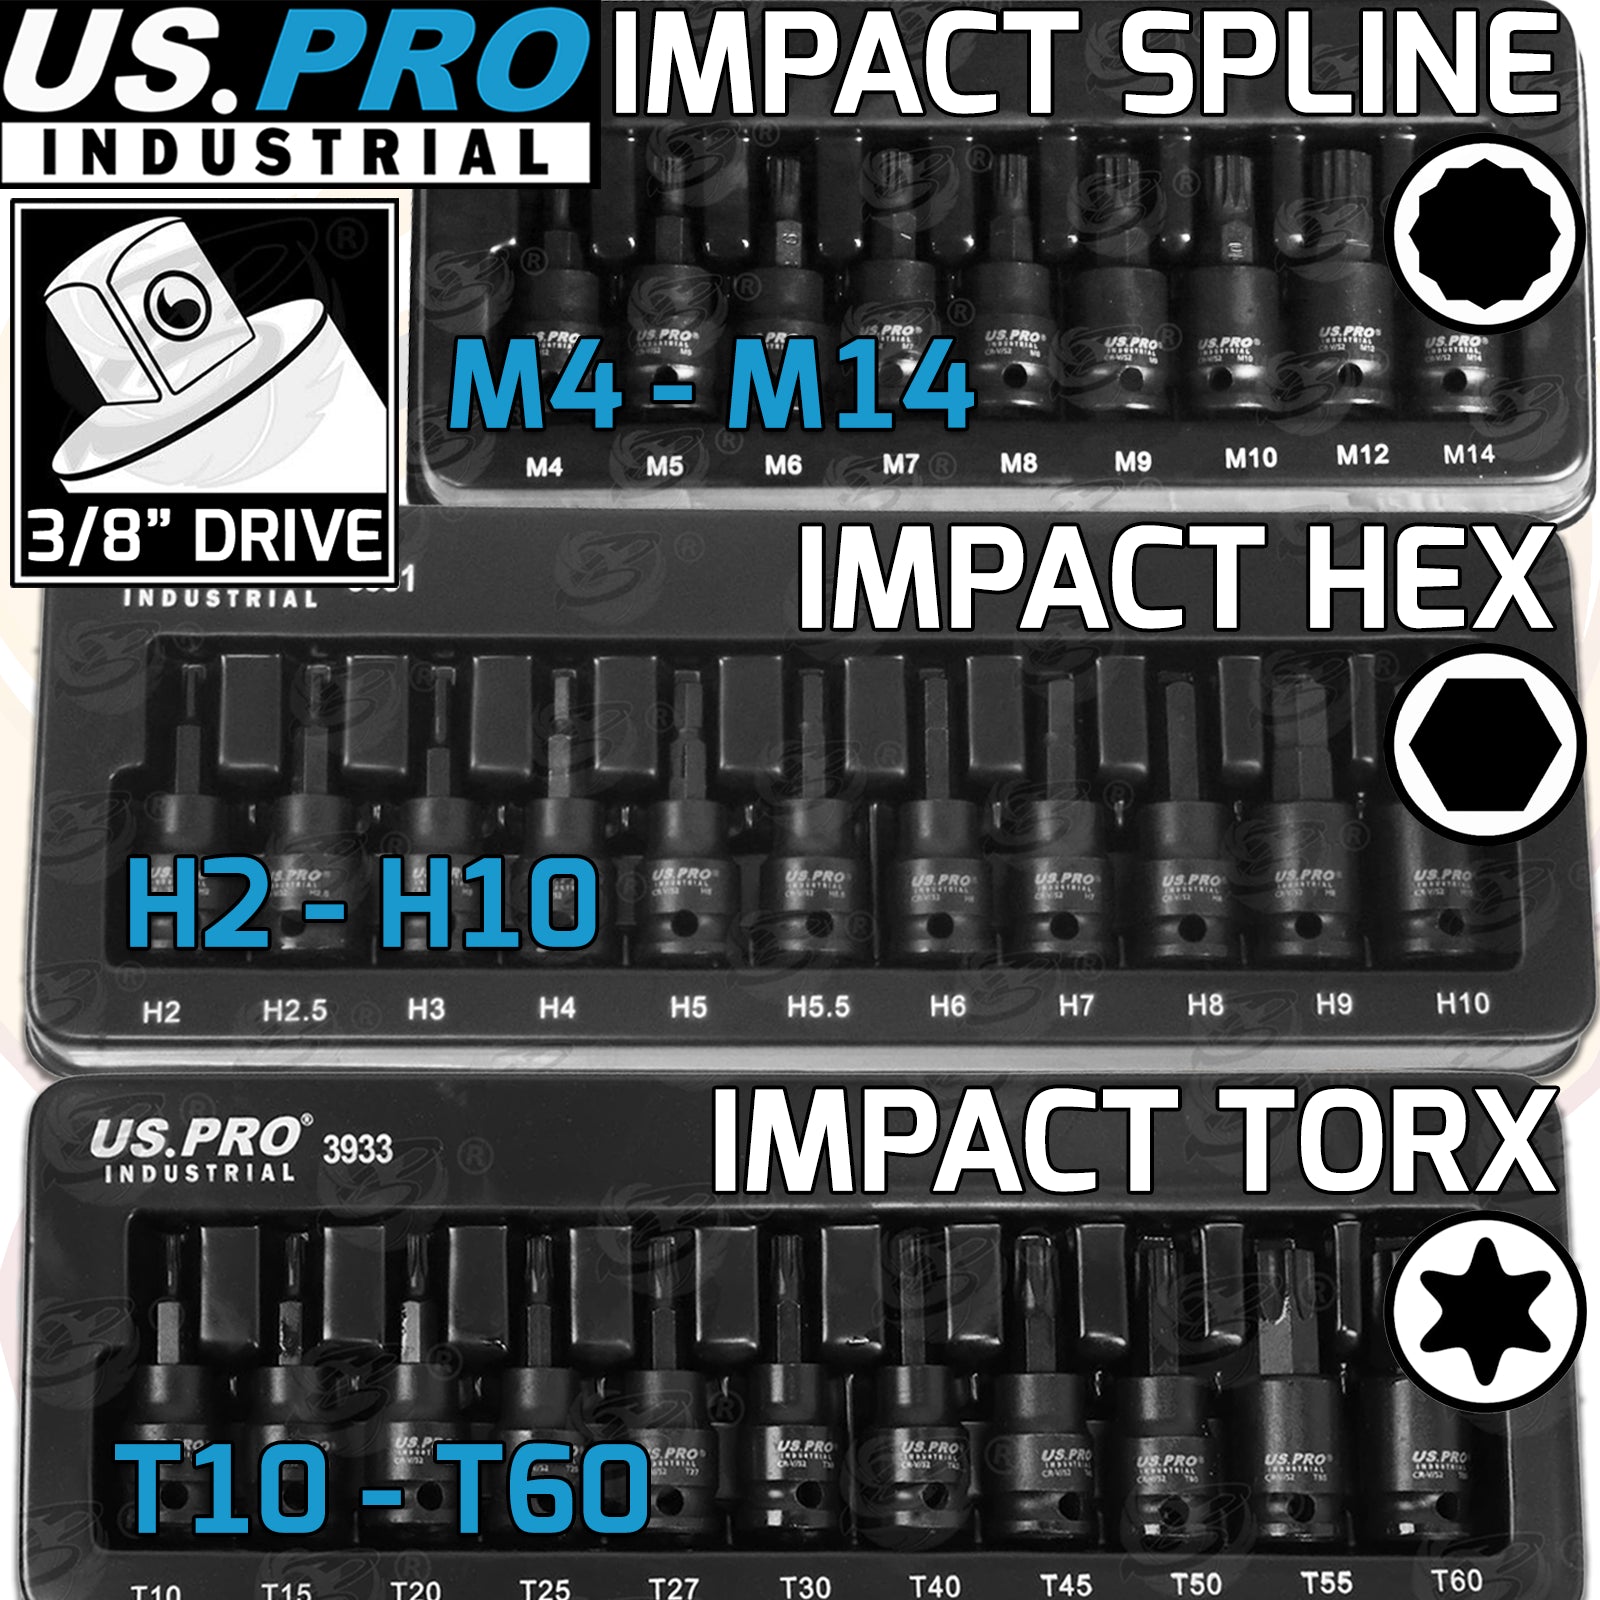 US PRO 31PCS 3/8" DRIVE IMPACT HEX - TORX - SPLINE BIT SOCKETS